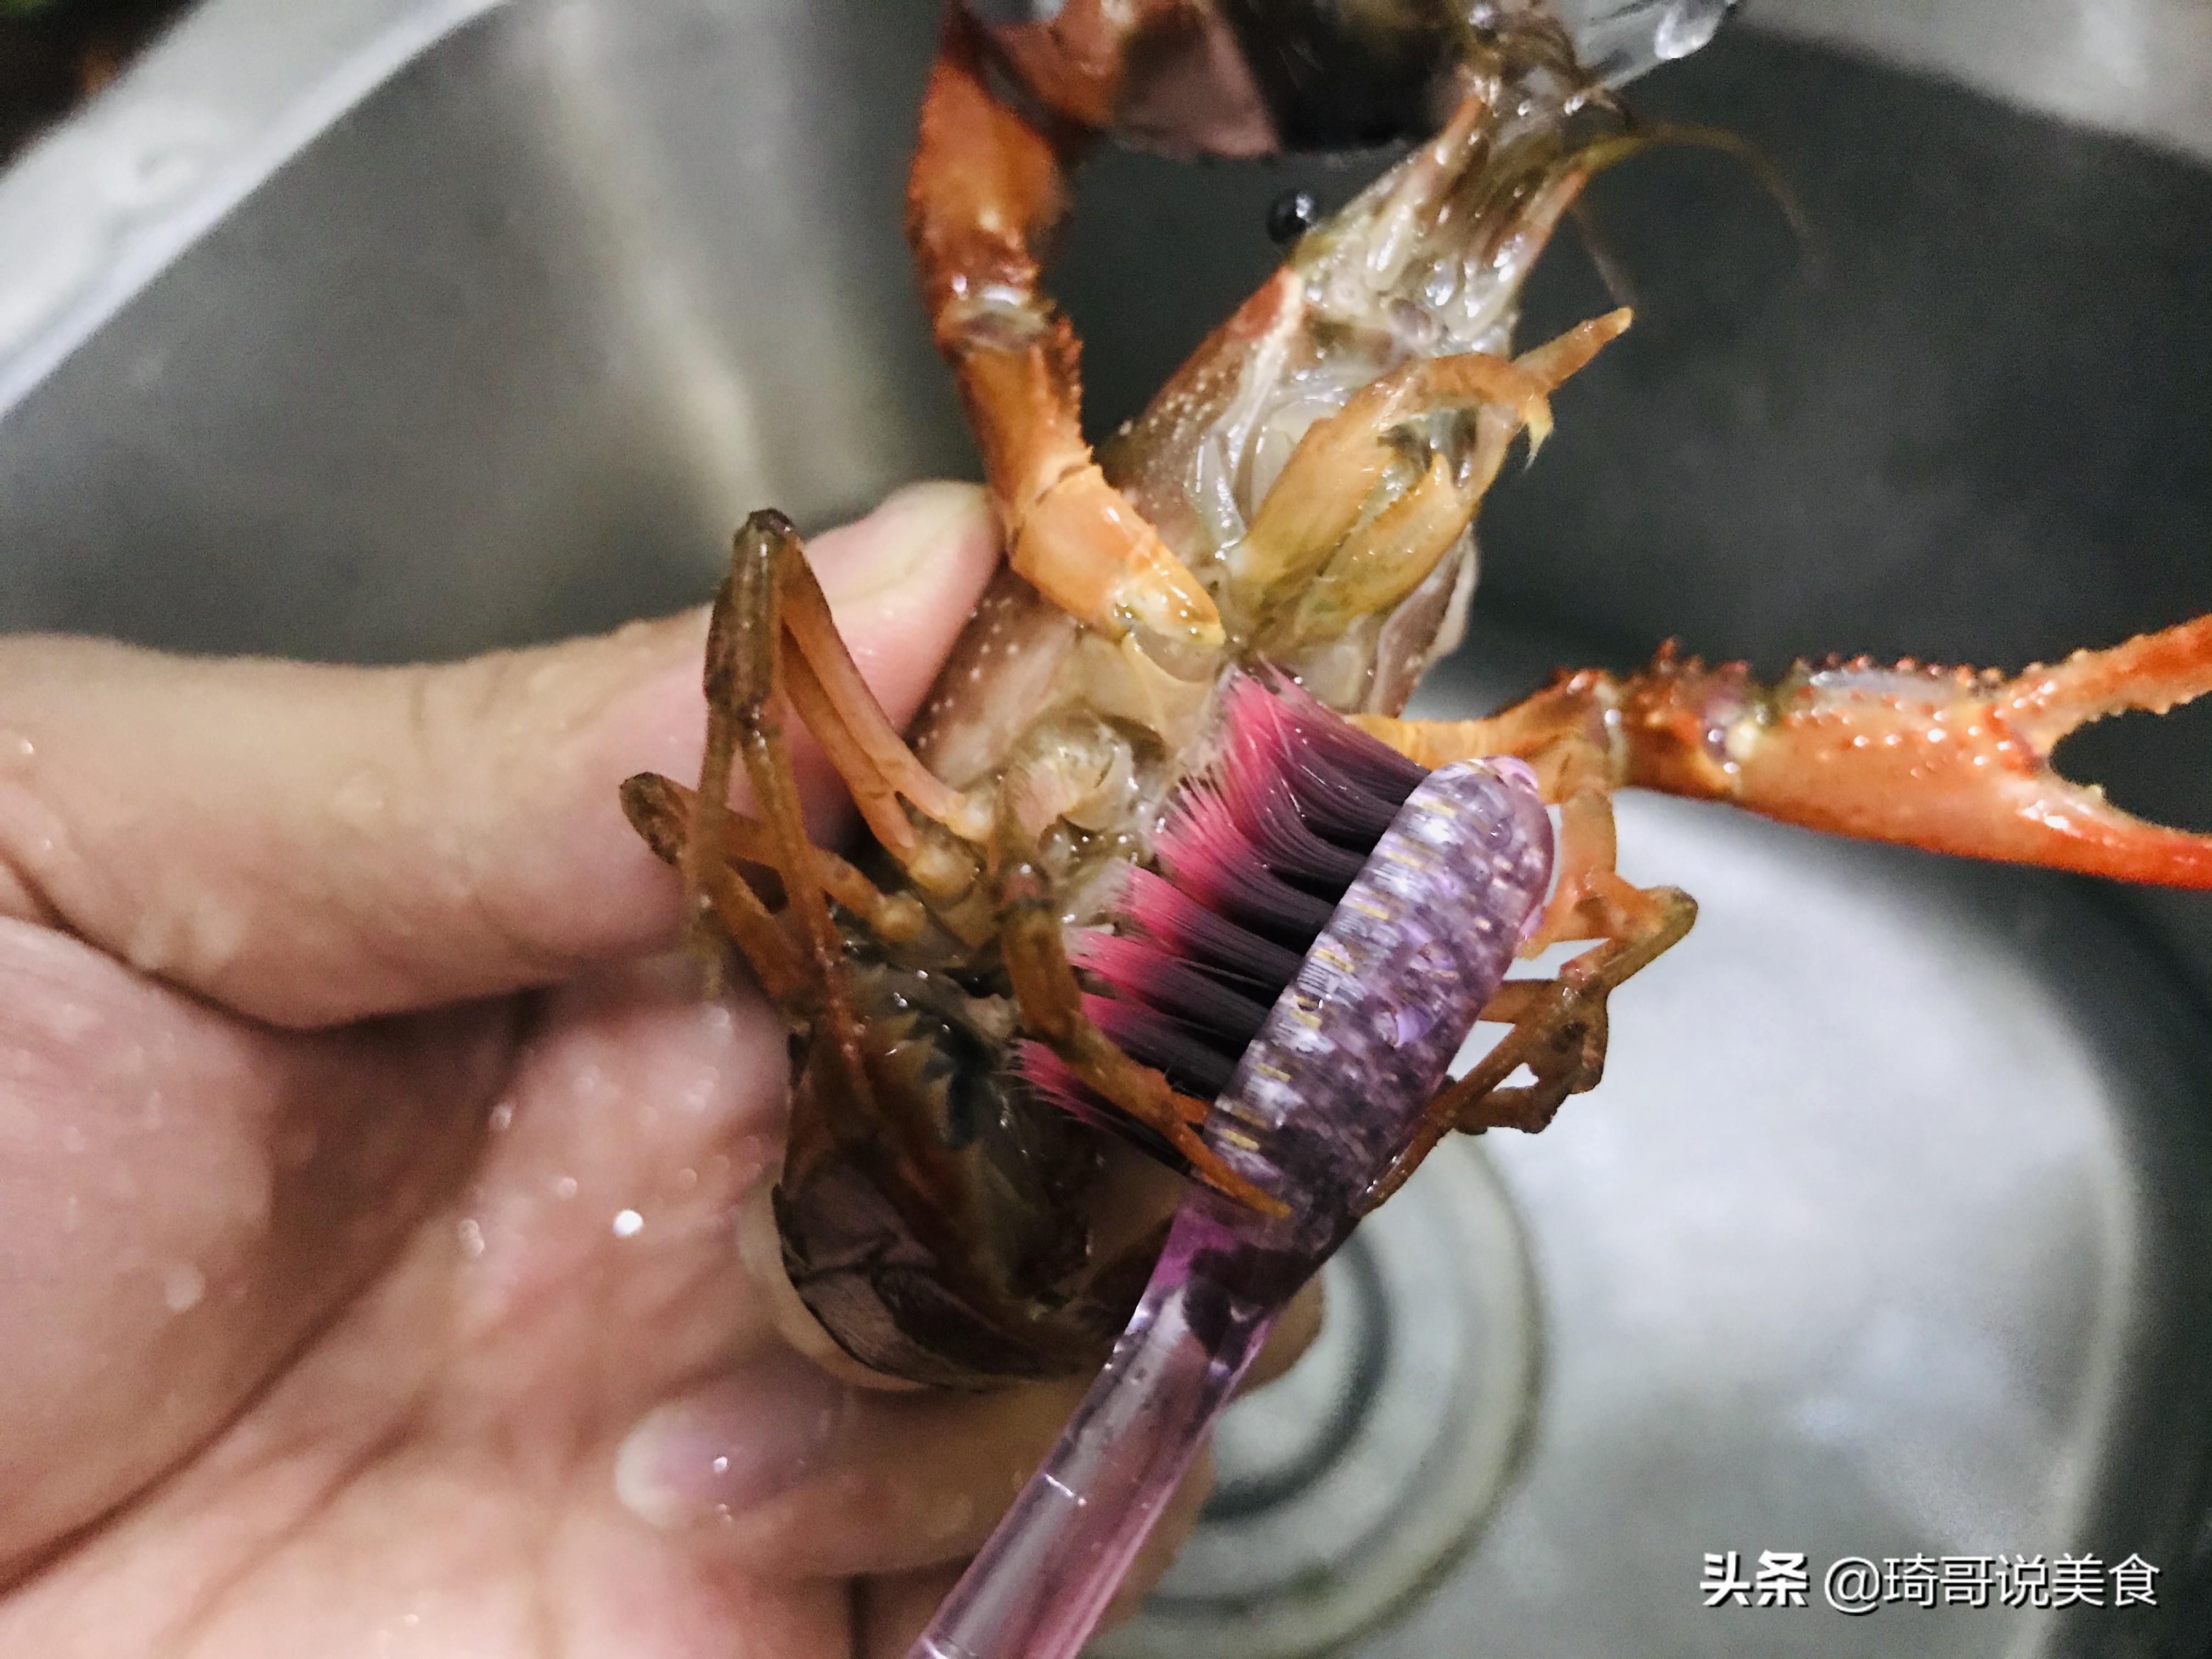 小龙虾正确吃法图解示范，小龙虾哪里不能吃